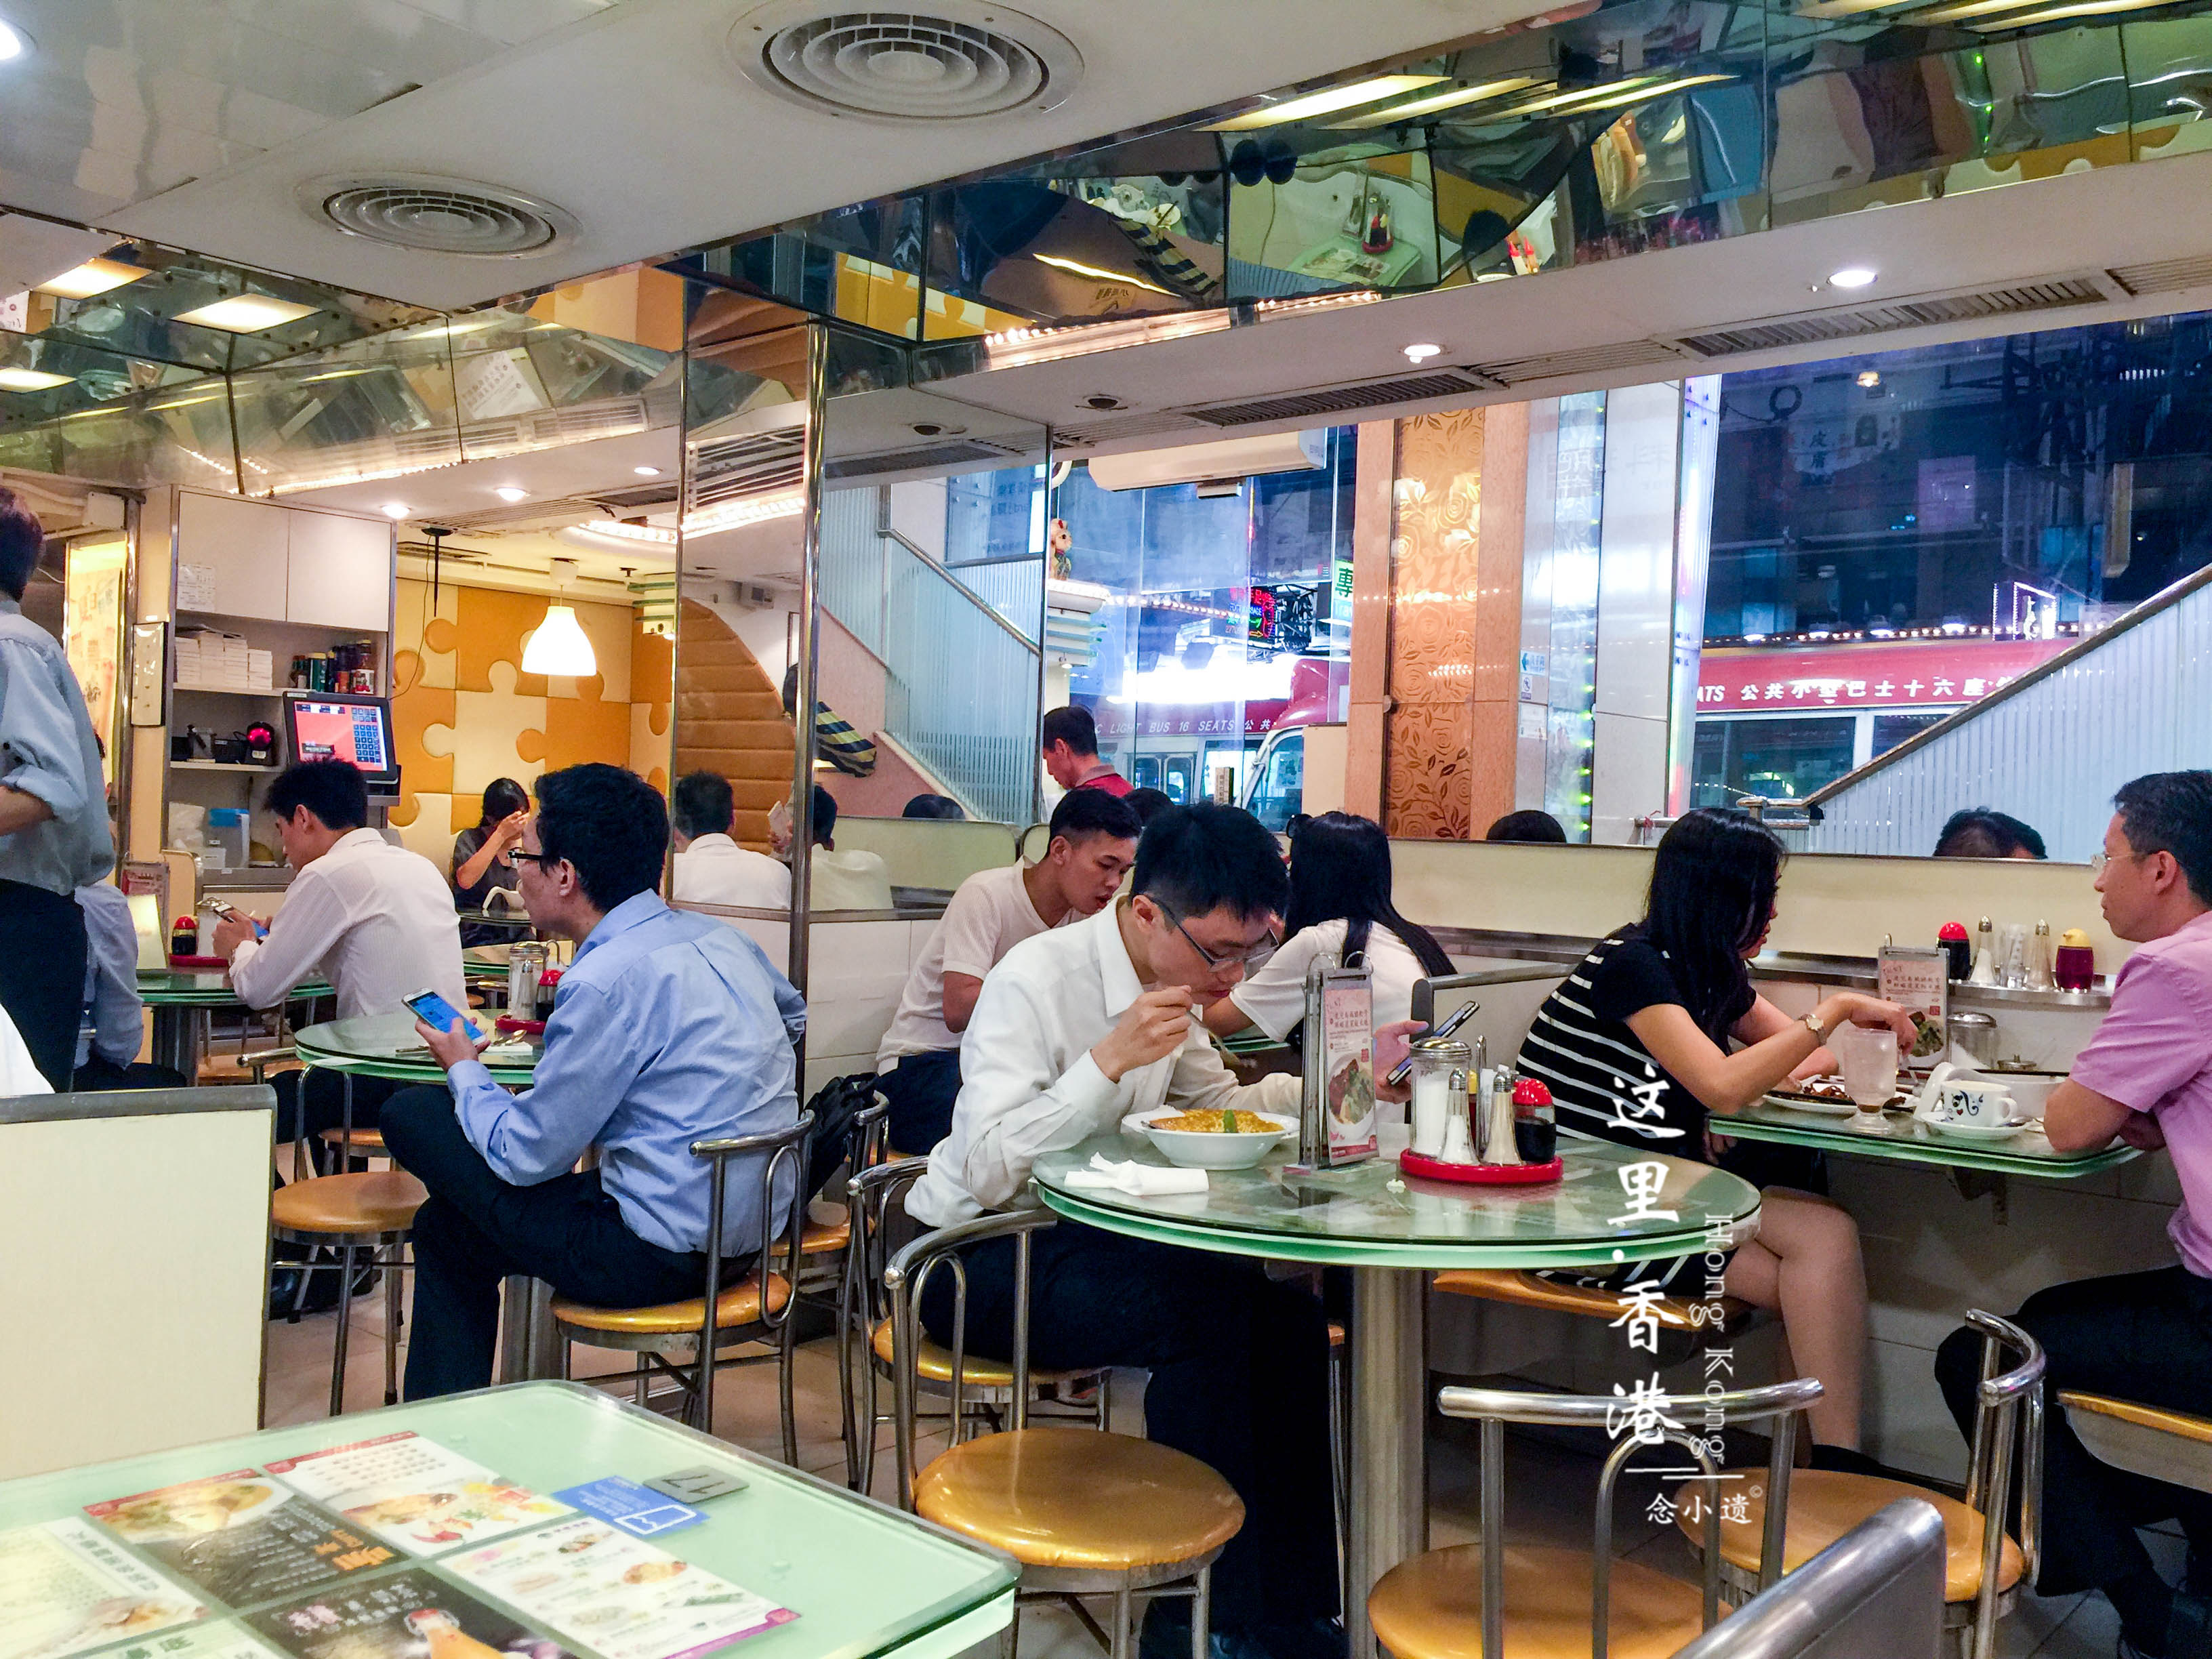 香港著名的24小时连锁茶餐厅,无论是名人明星还是平民百姓都会"来翠华